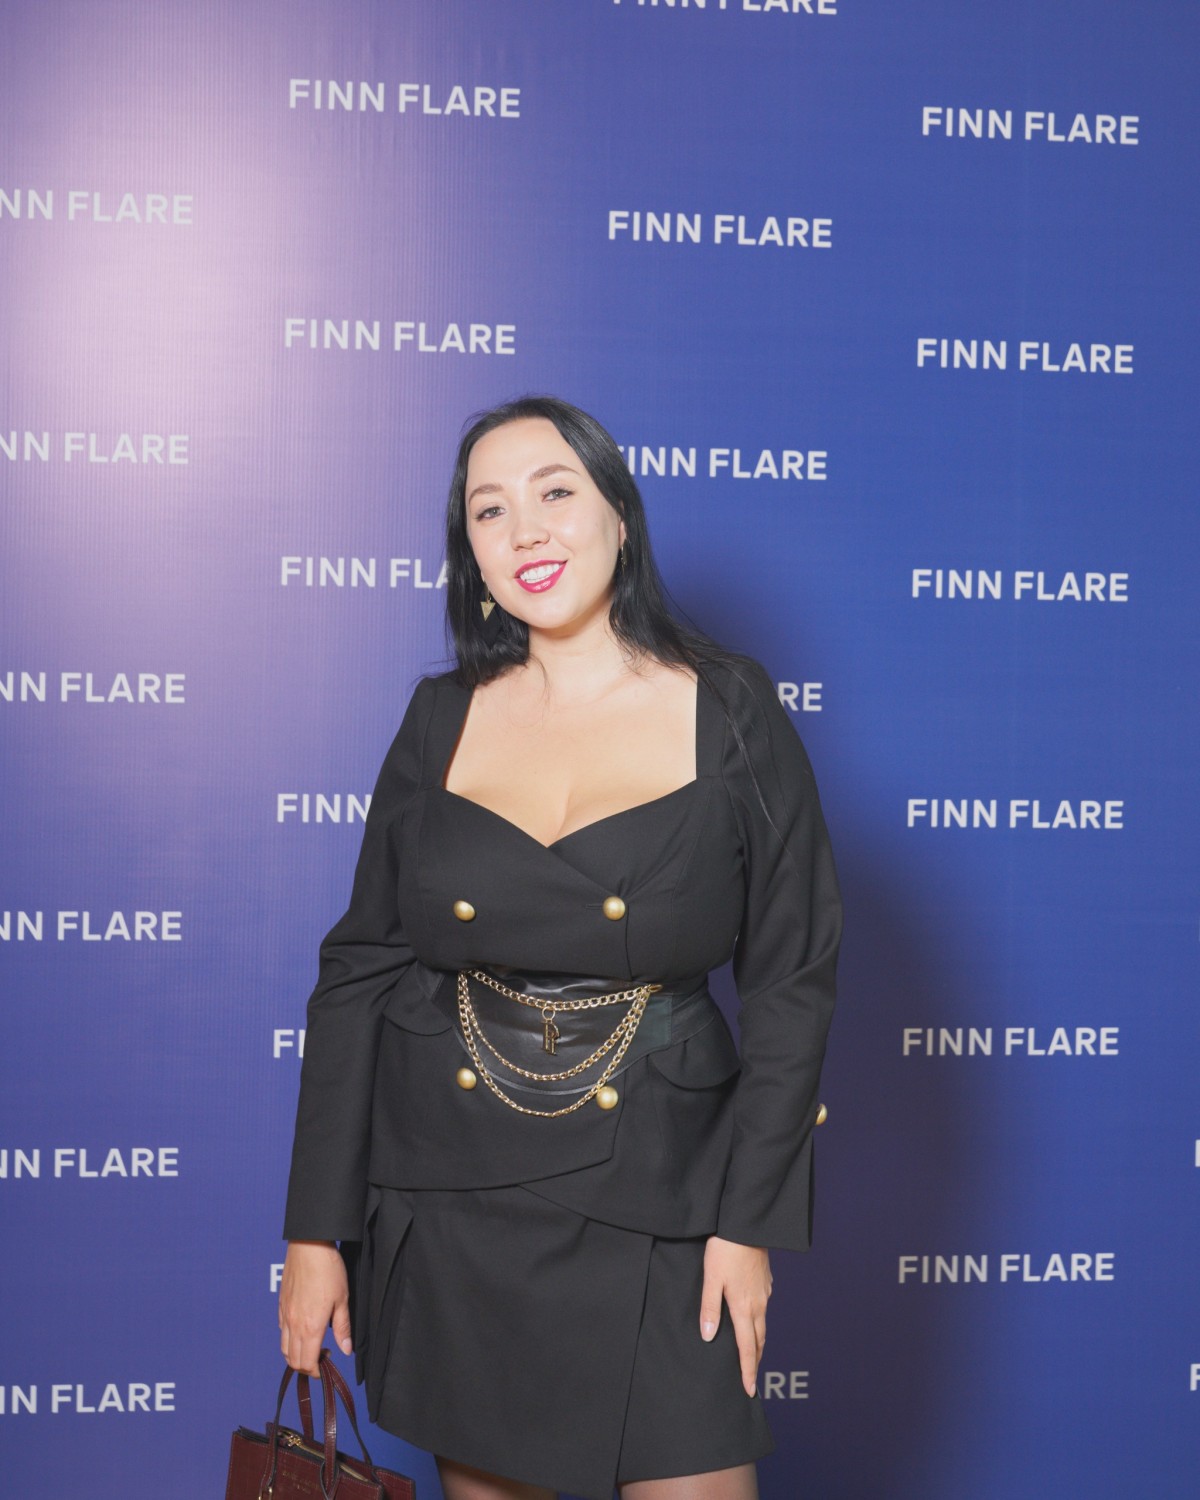 Как прошел модный осенний бранч от бренда FINN FLARE?